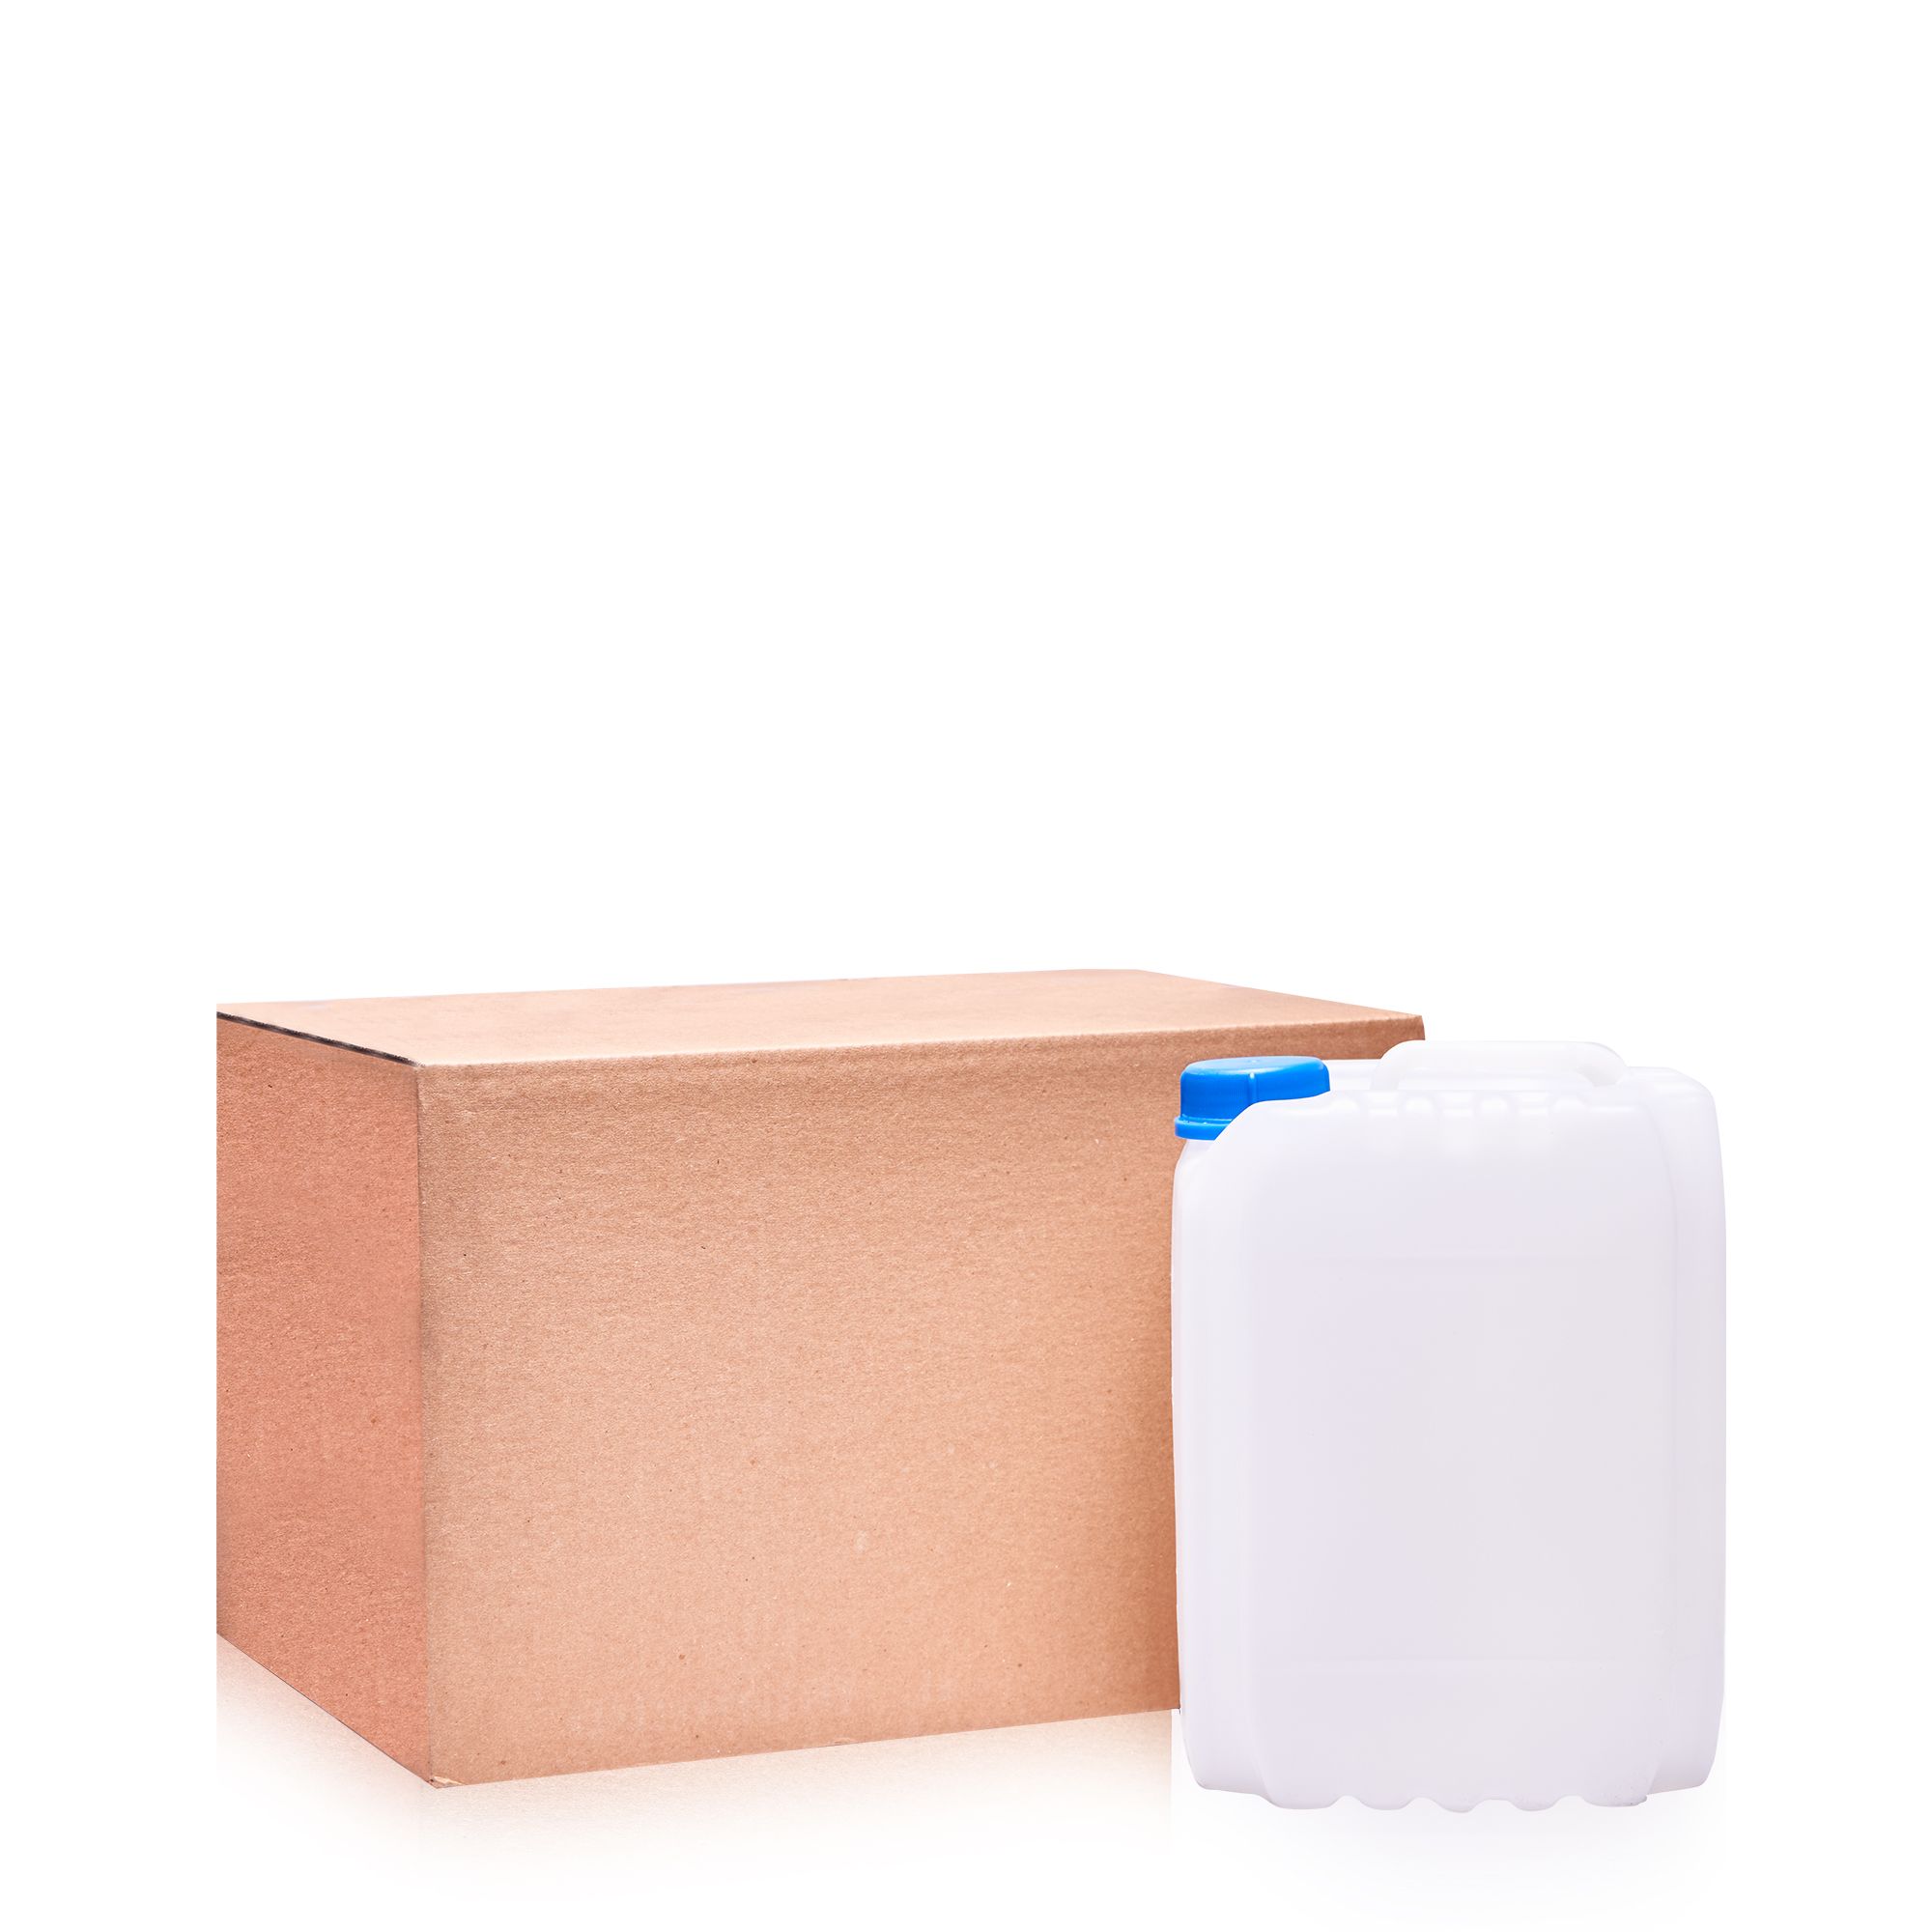 Отвердитель ПЭПА — канистра с картонной коробкой